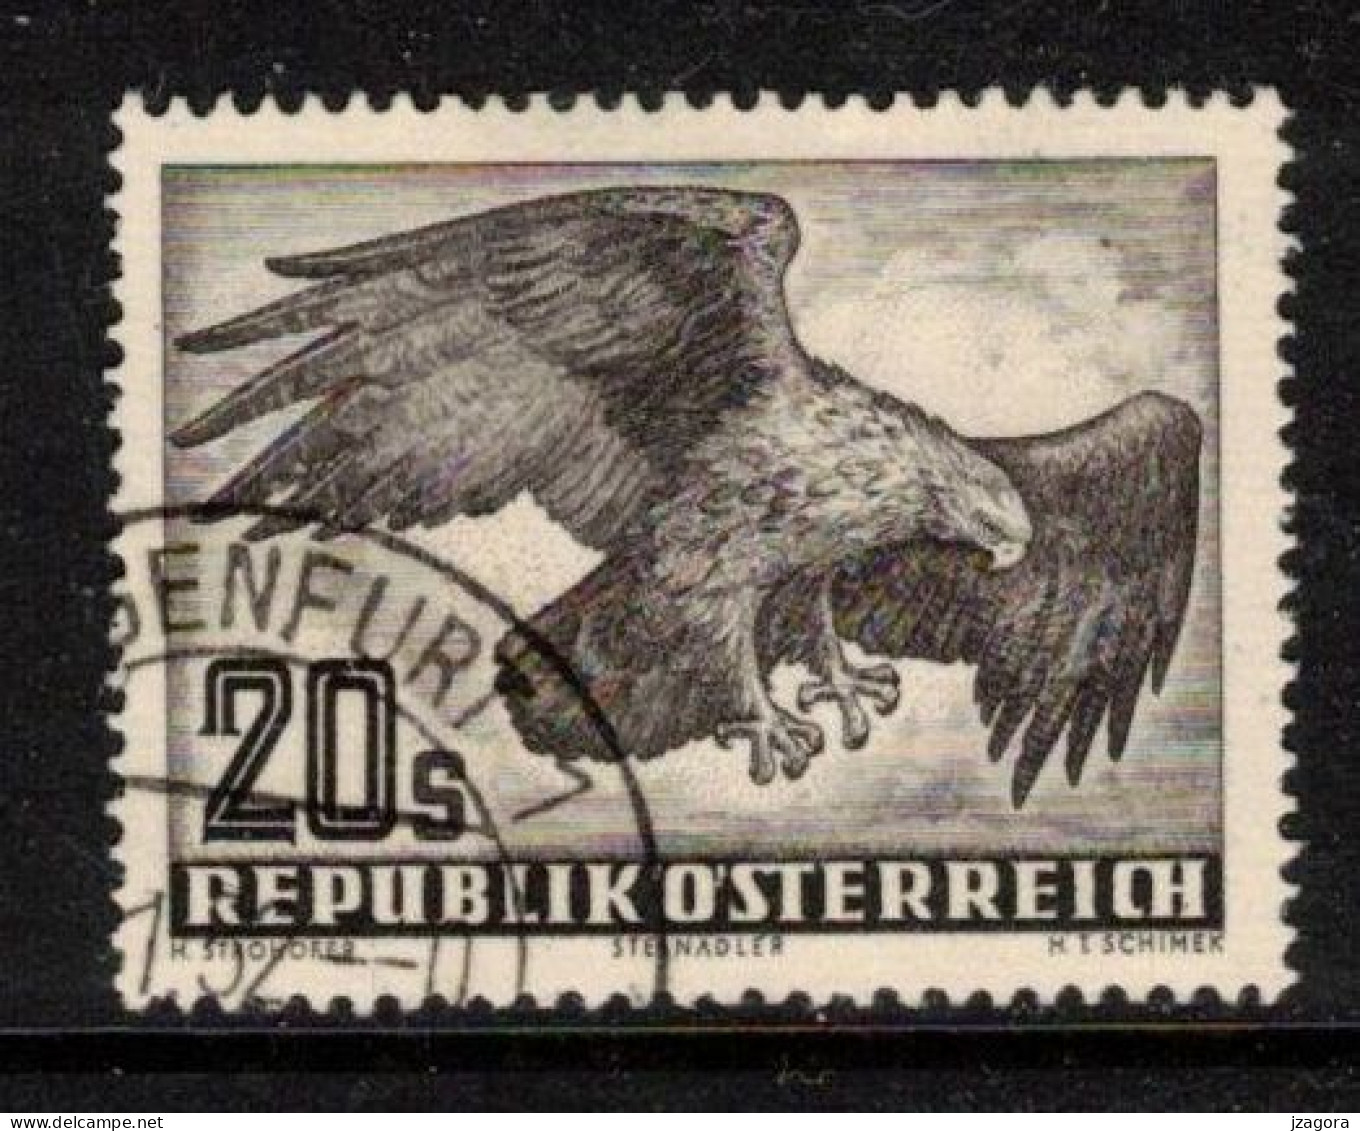 BIRDS EAGLE VÖGEL ADLER OISEAUX AIGLE AUSTRIA ÖSTERREICH AUTRICHE 1952 MI 968 ANK 973 YT PA60 SC C60  Air Mail Flugpost - Usati